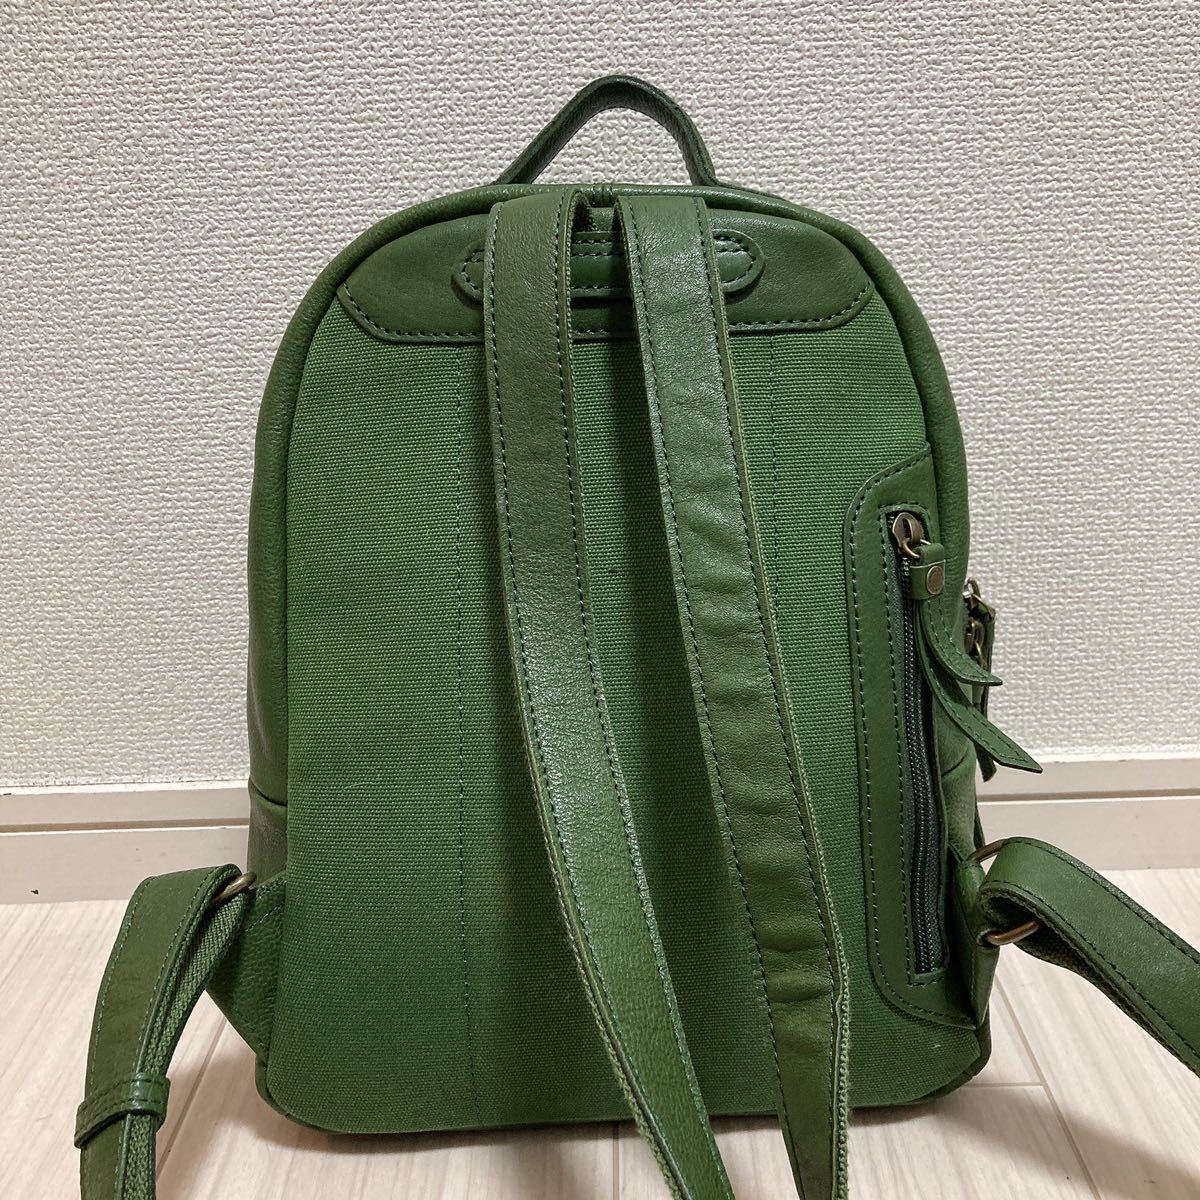  прекрасный товар dakota dakota женский мужской рюкзак рюкзак сумка зеленый зеленый натуральная кожа телячья кожа кожа простой большая вместимость Logo бренд 